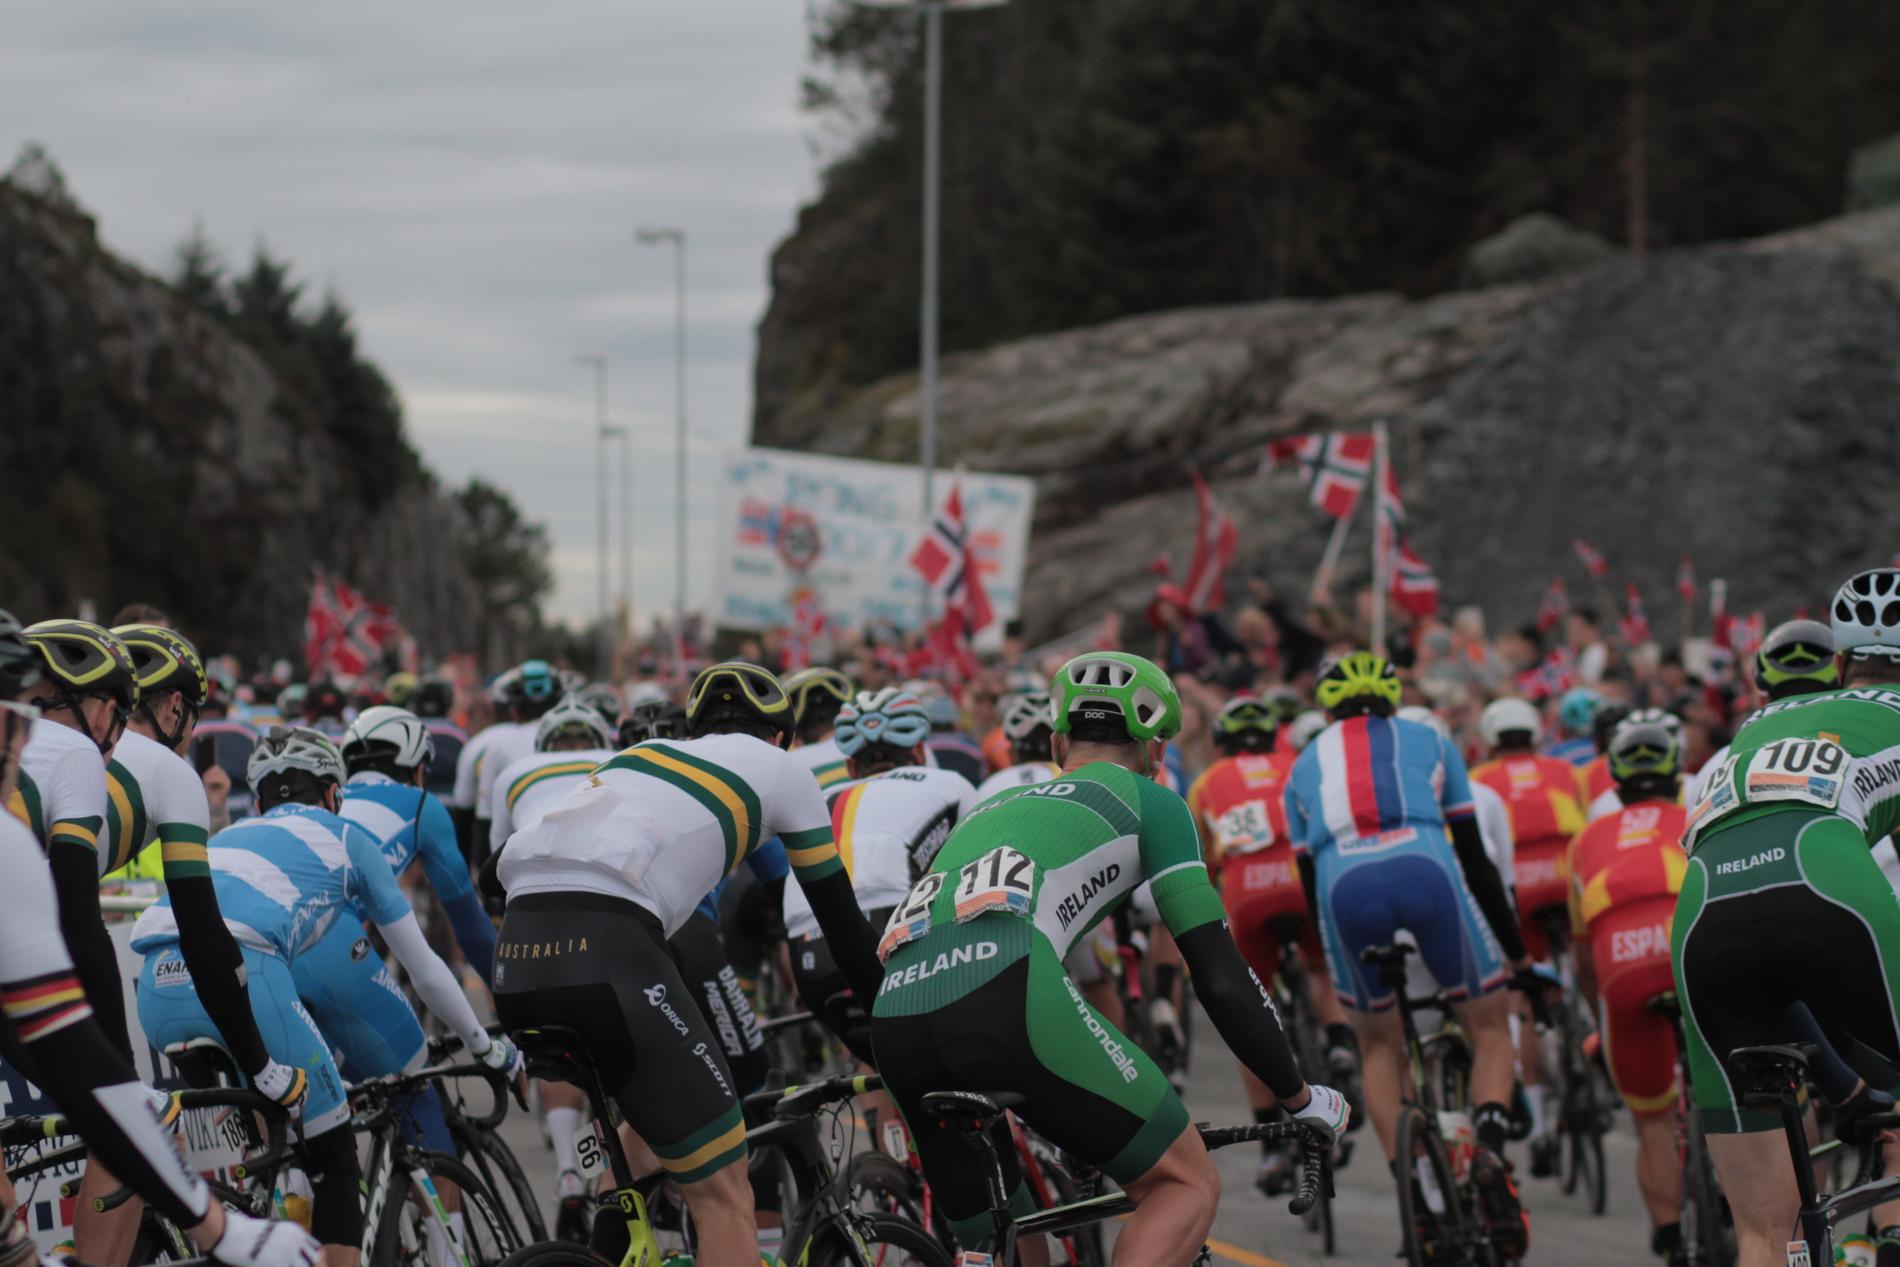  Her er syklistene på vei frem til start til stor interesse fra mange fremmøtte i Øygarden.  